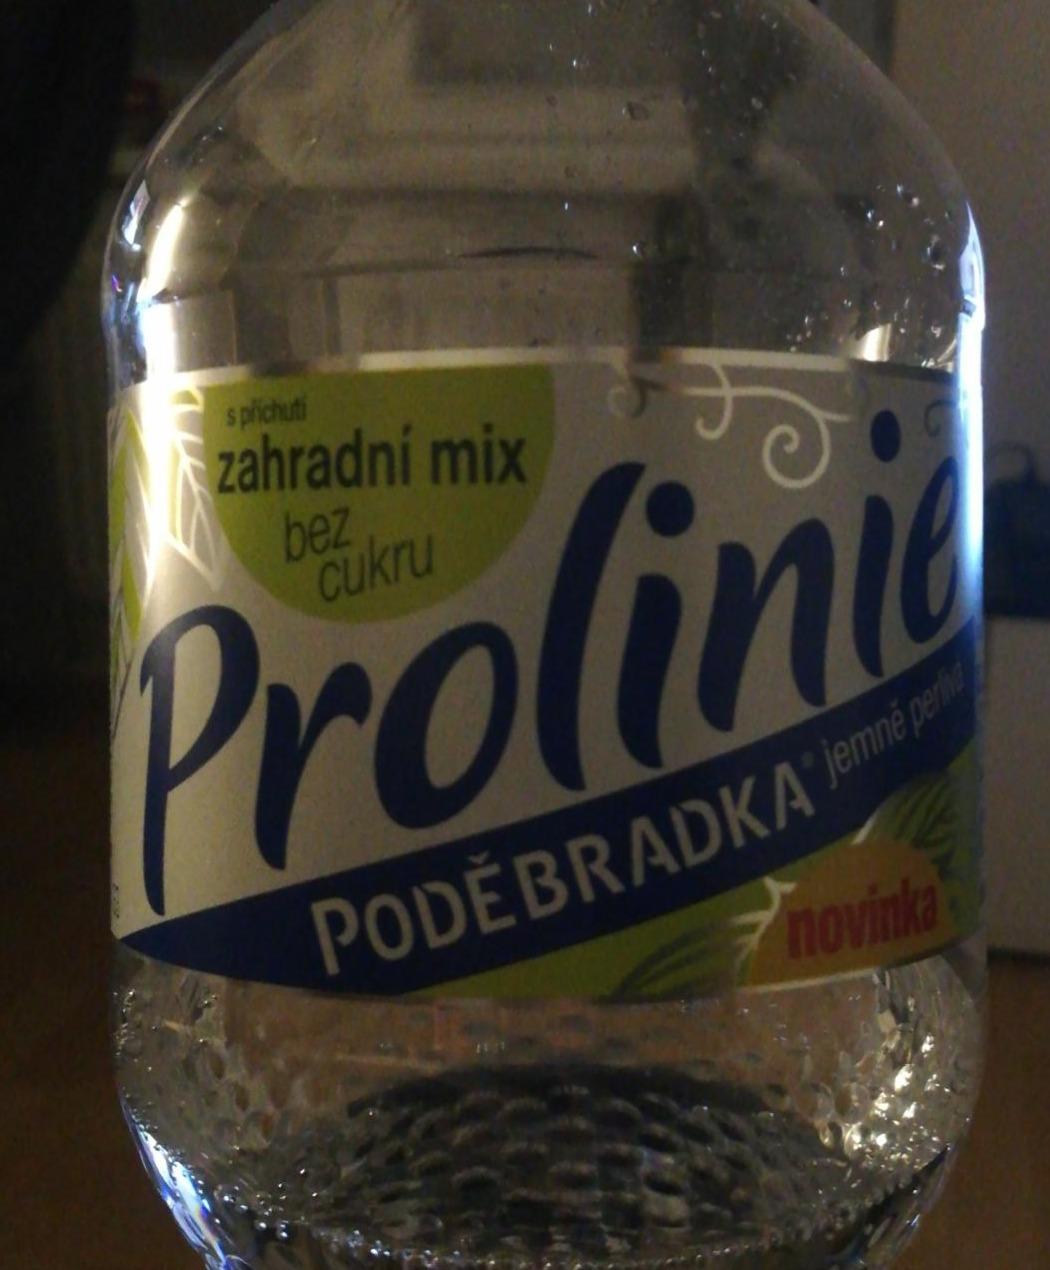 Fotografie - Prolinie zahradní mix bez cukru Poděbradka